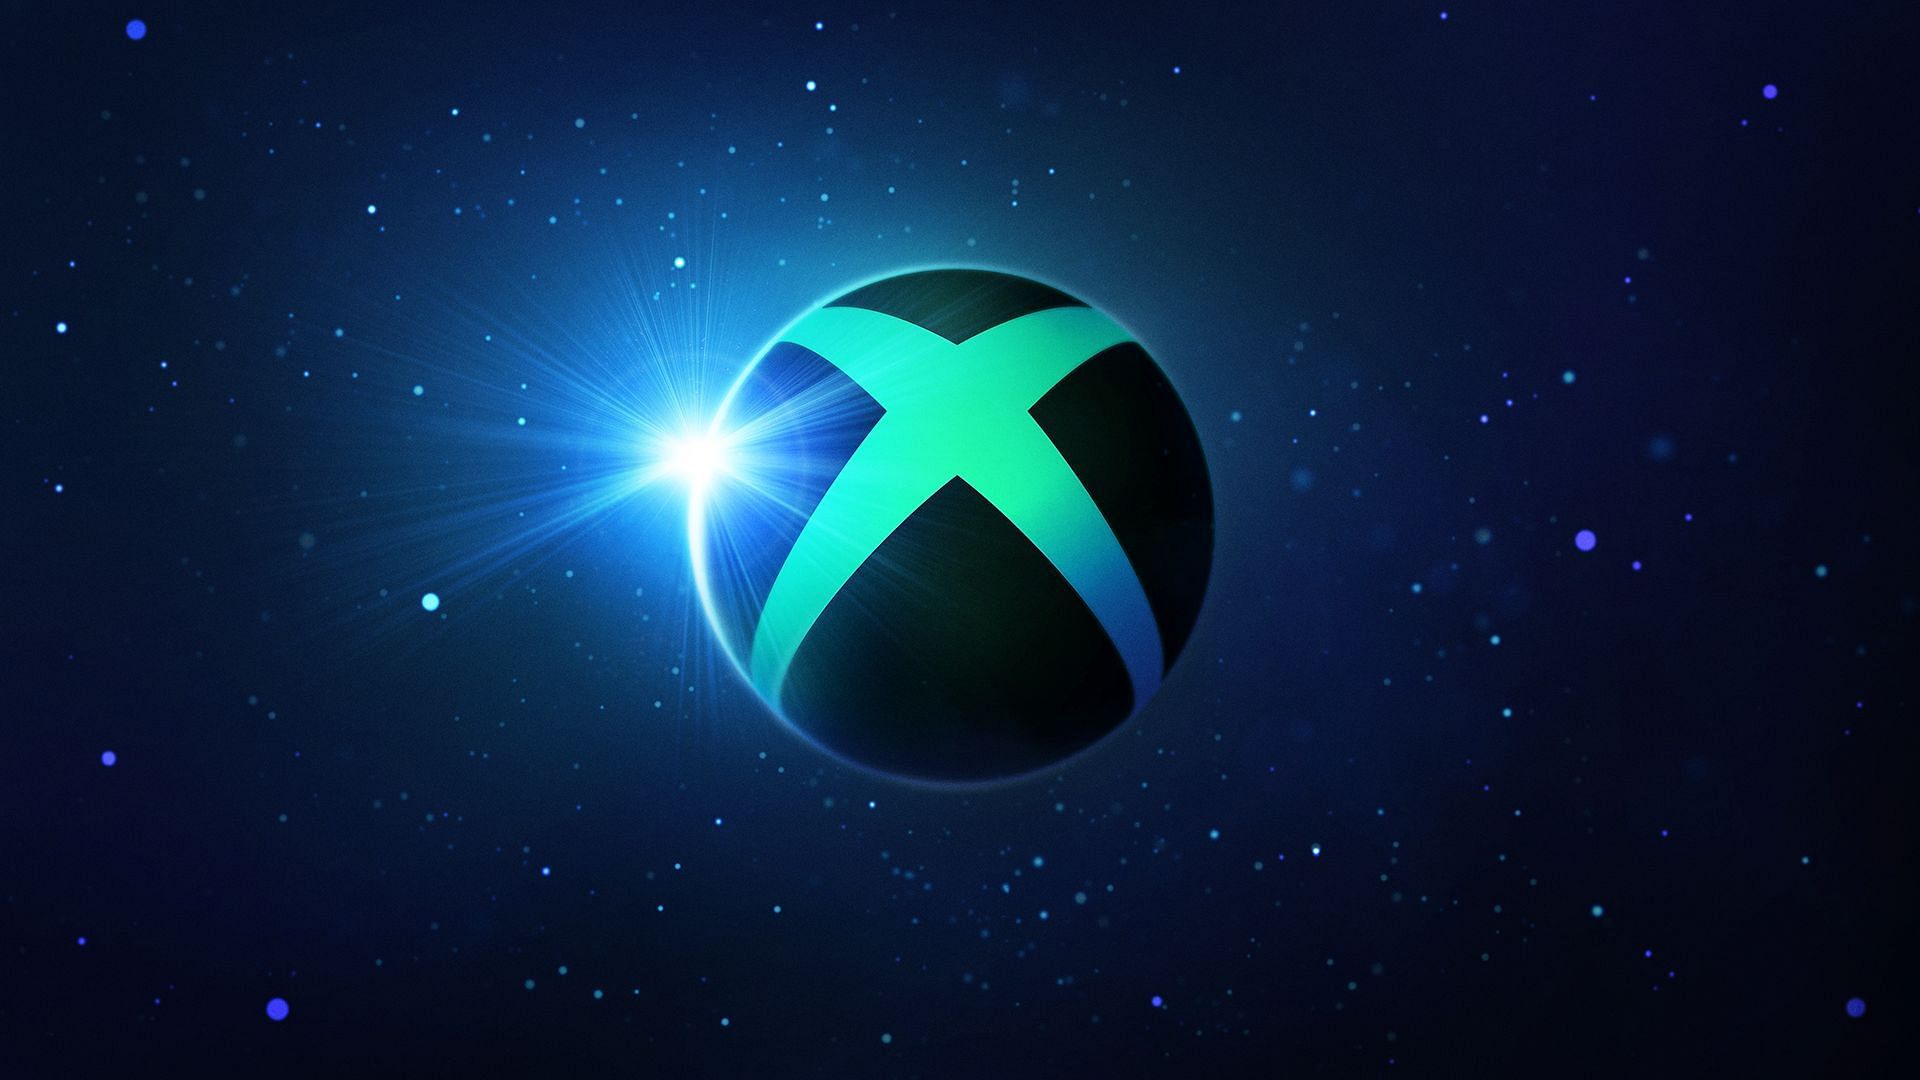 Xbox Showcase announced.